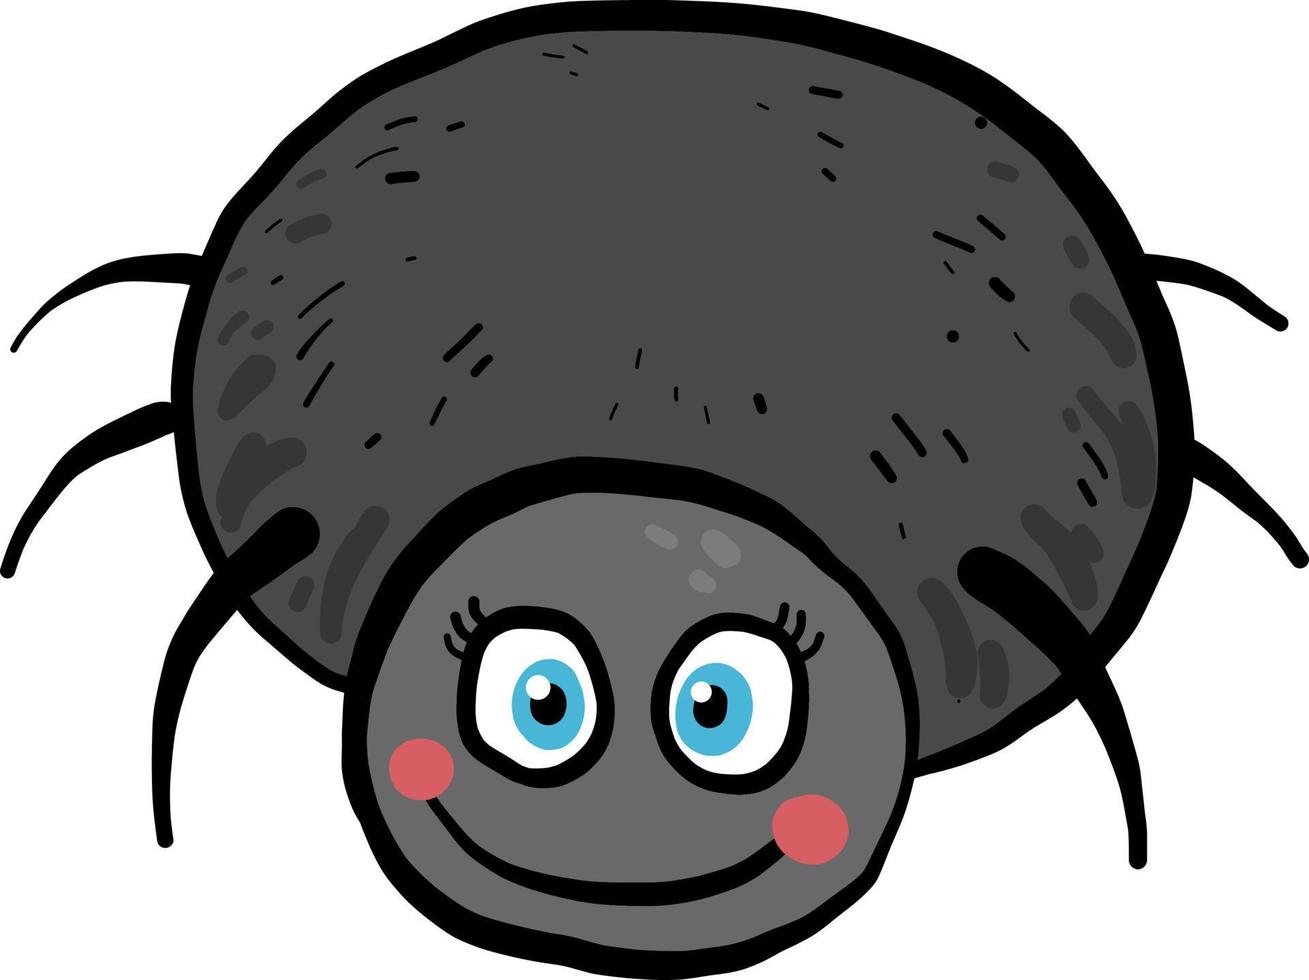 Araignée noire souriante, illustration, vecteur sur fond blanc.